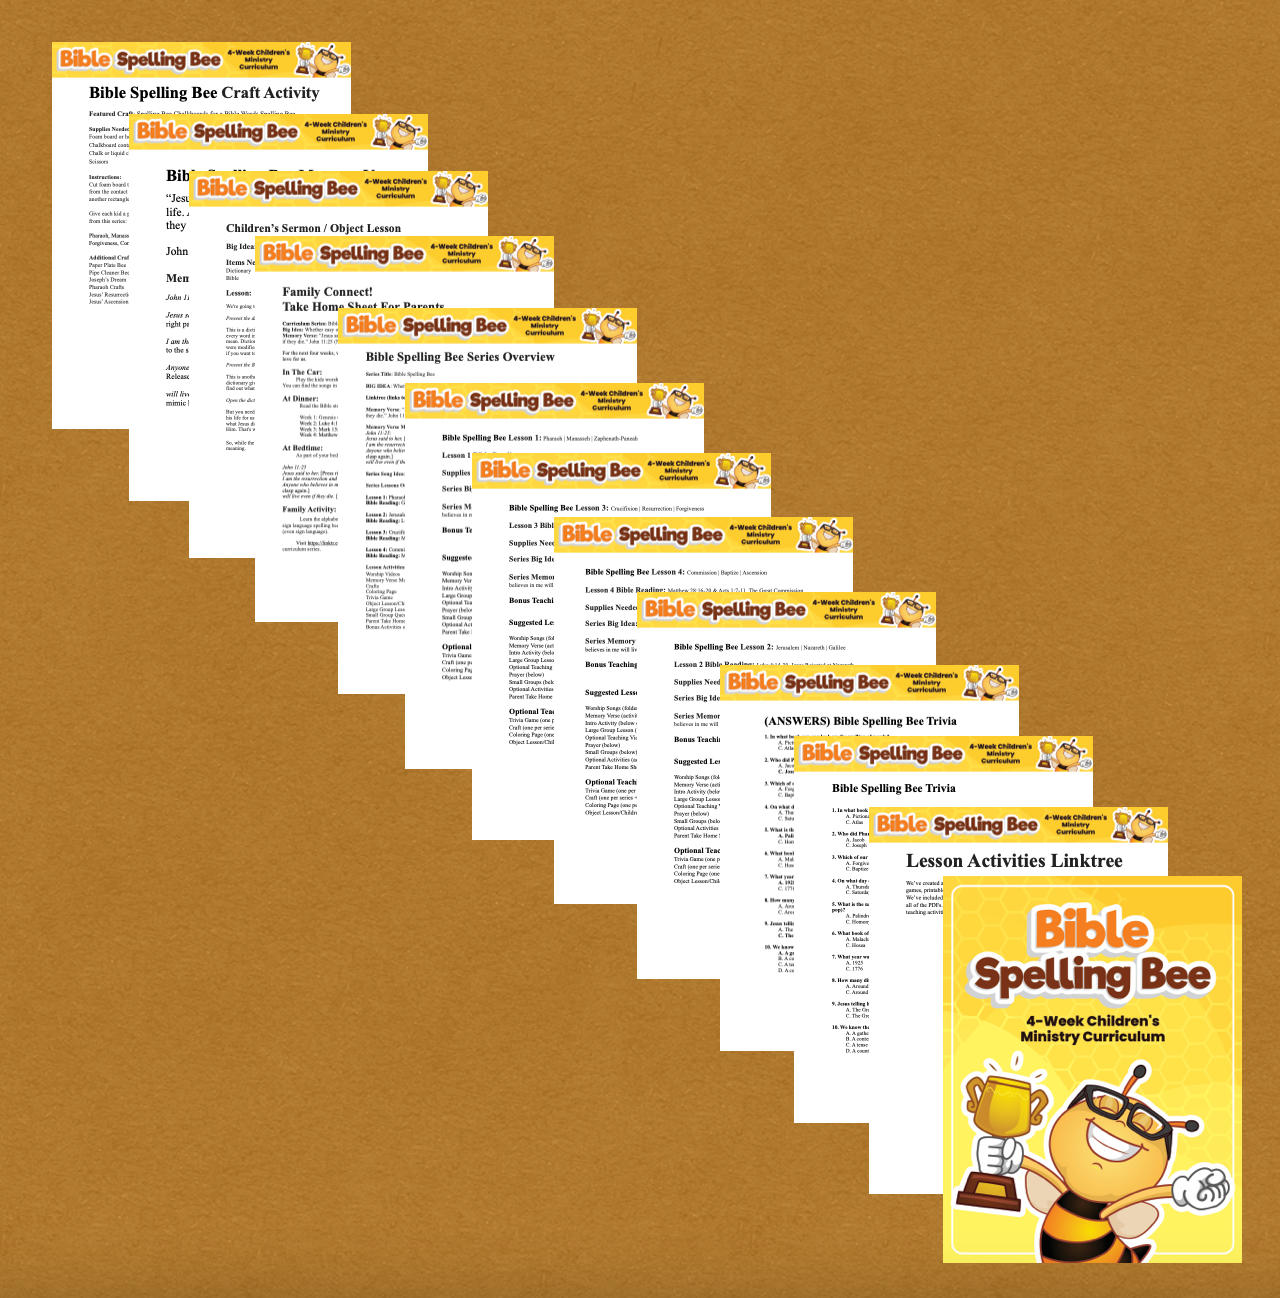 Bible Spelling Bee 4-Week Children’s Ministry Curriculum